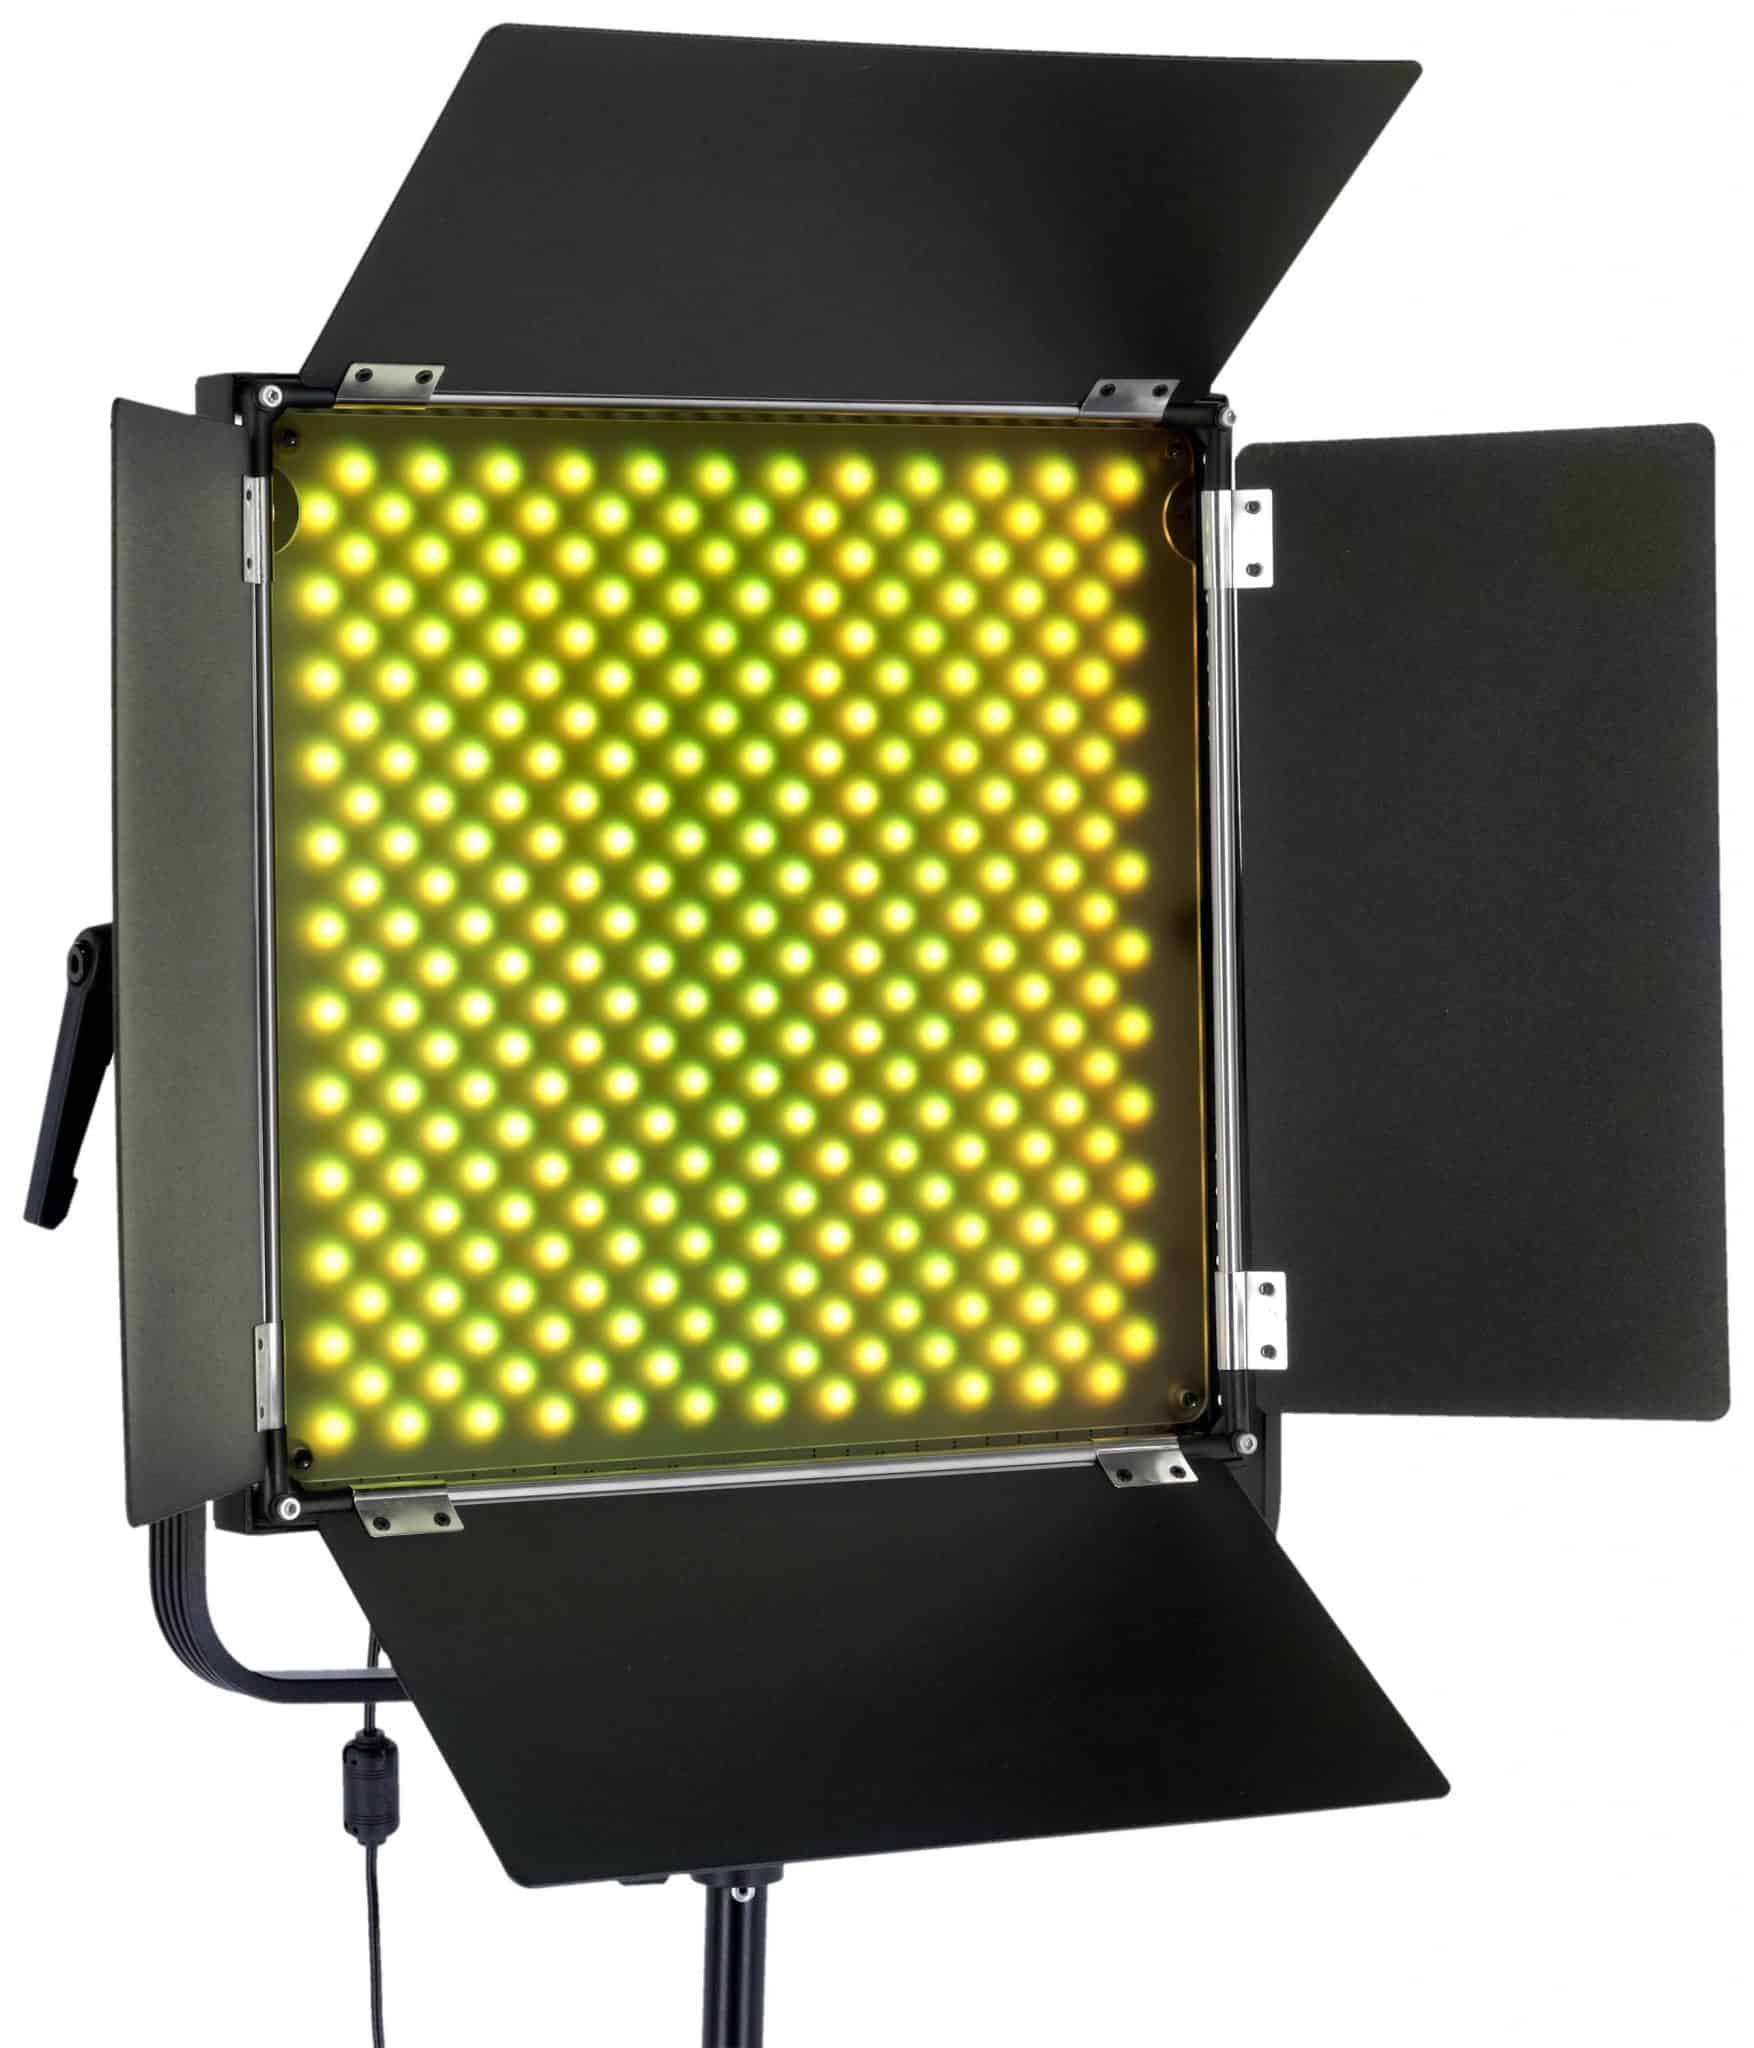 Rollei stellt die neue LED-Panel-Serie VIBE vor. 02